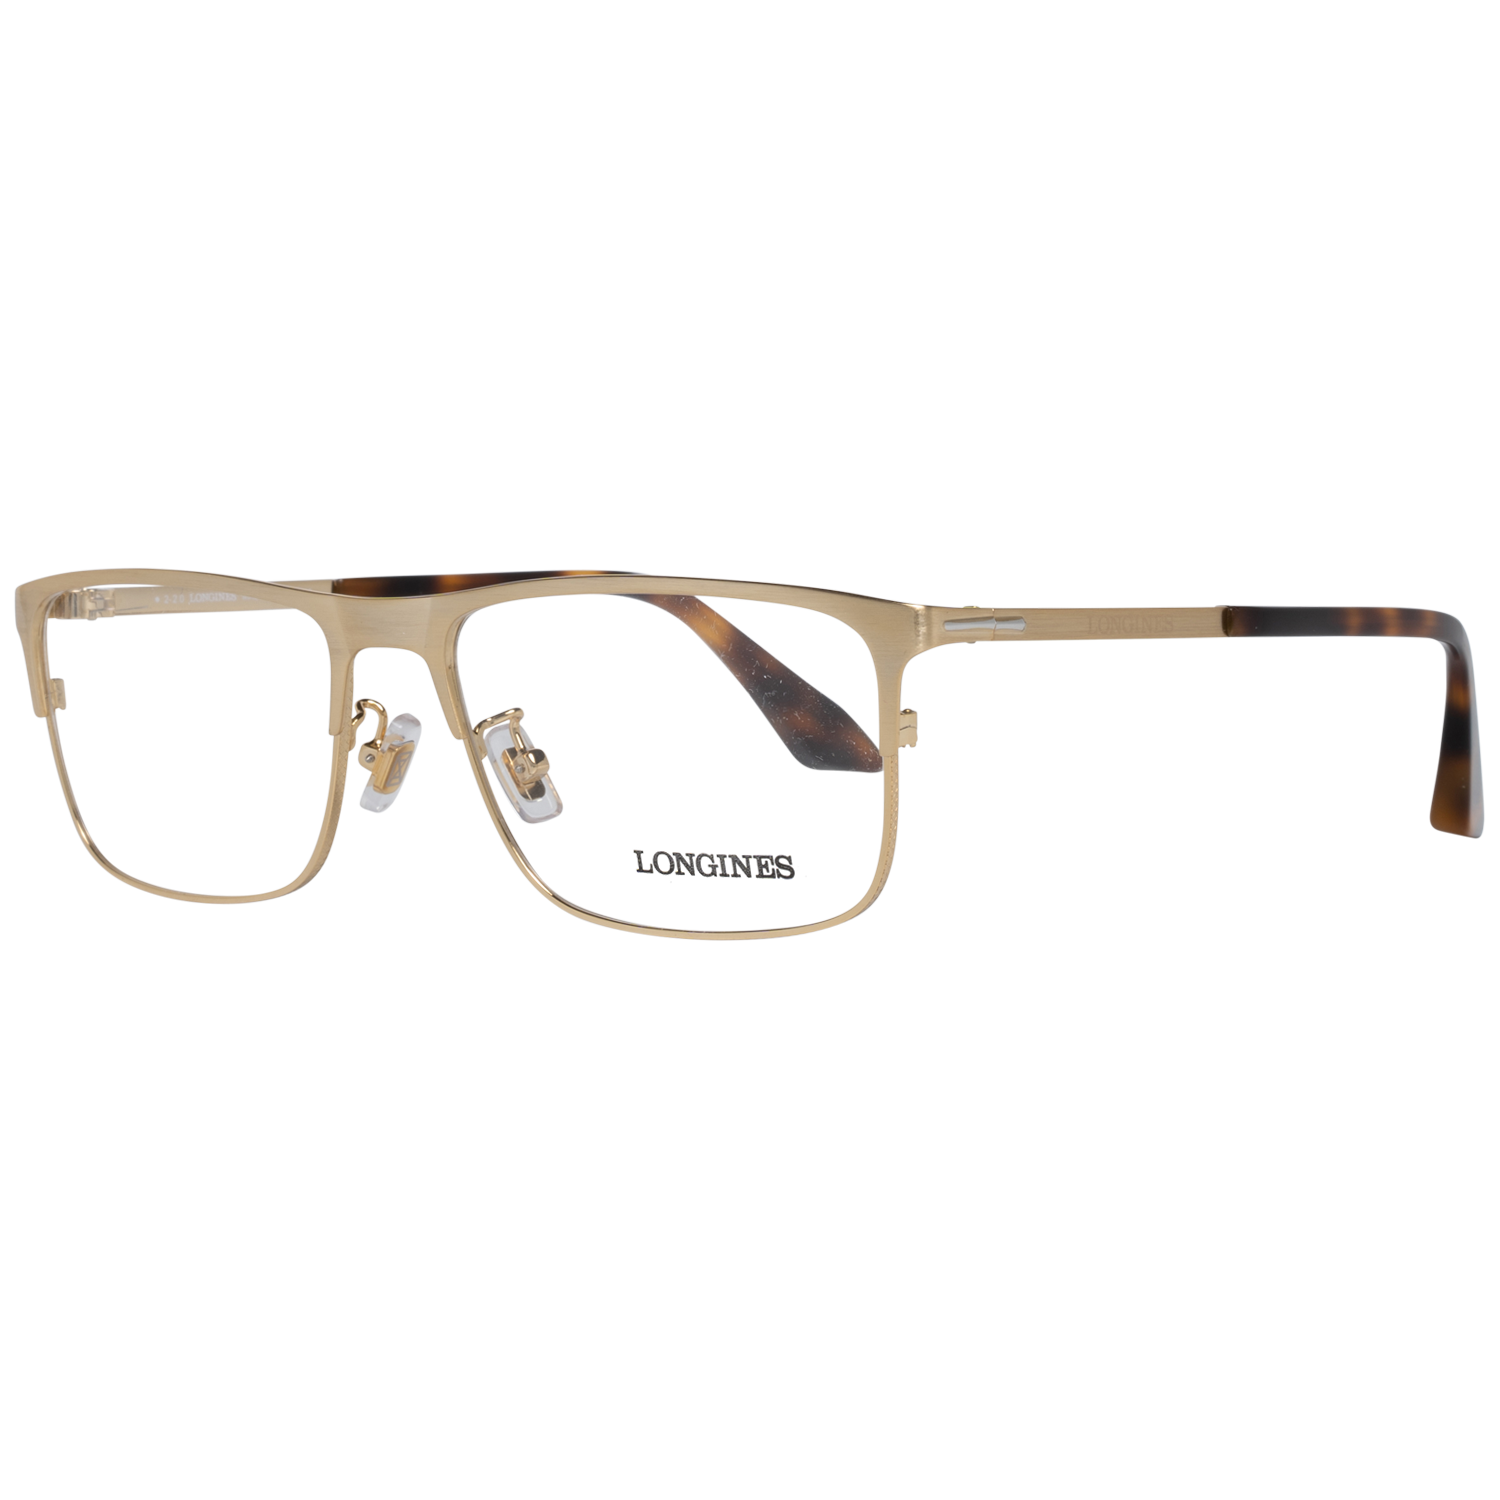 Longines Frames Longines Optical Frame LG5005-H 030 56 Eyeglasses Eyewear UK USA Australia 